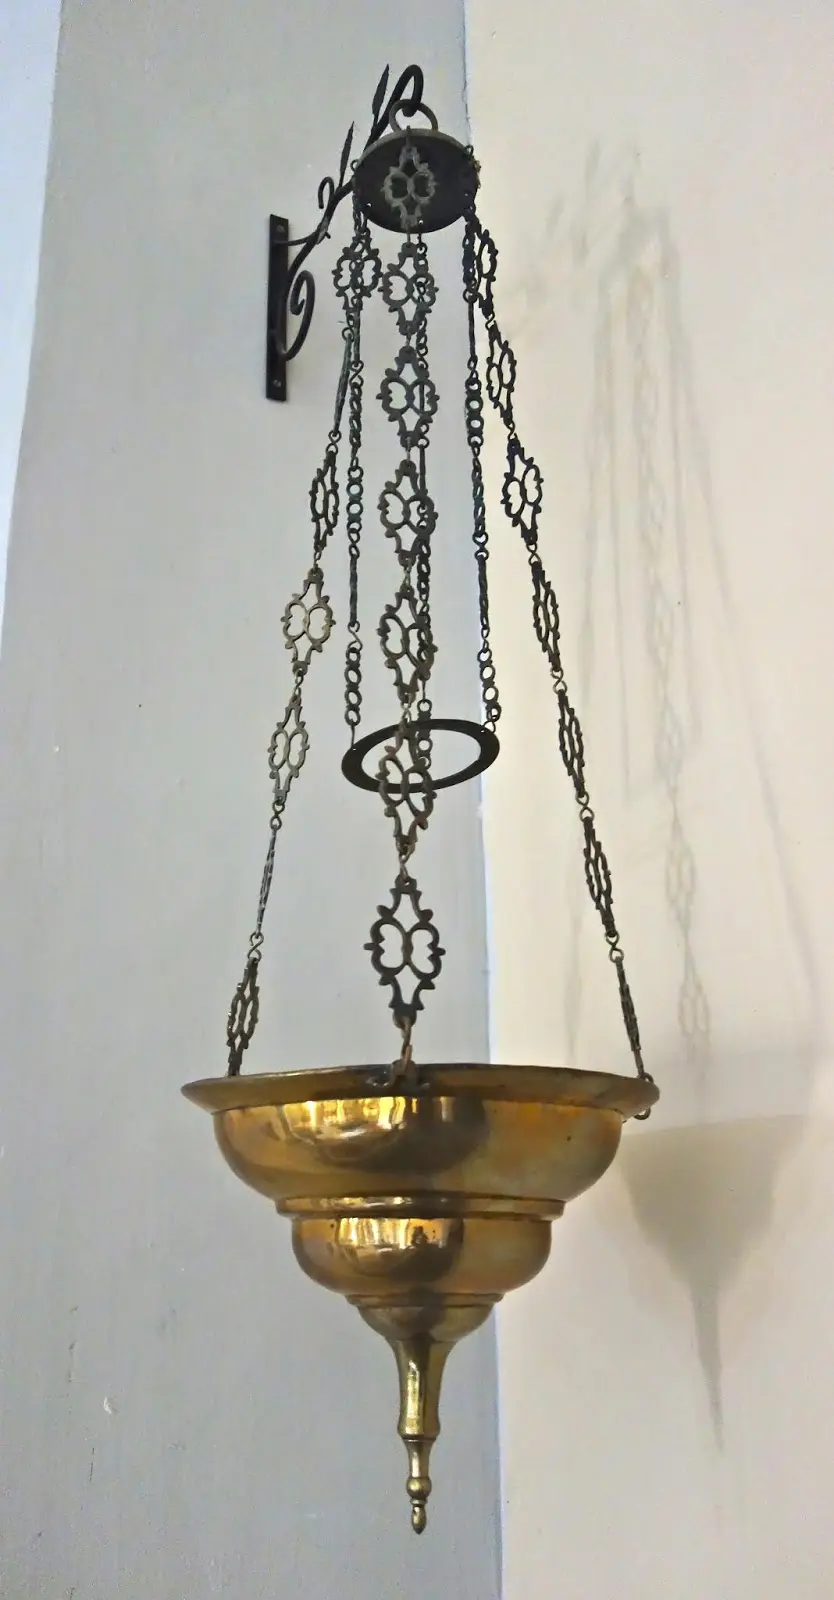 lamparas votivas para sagrarios - Cómo funciona una lámpara votiva